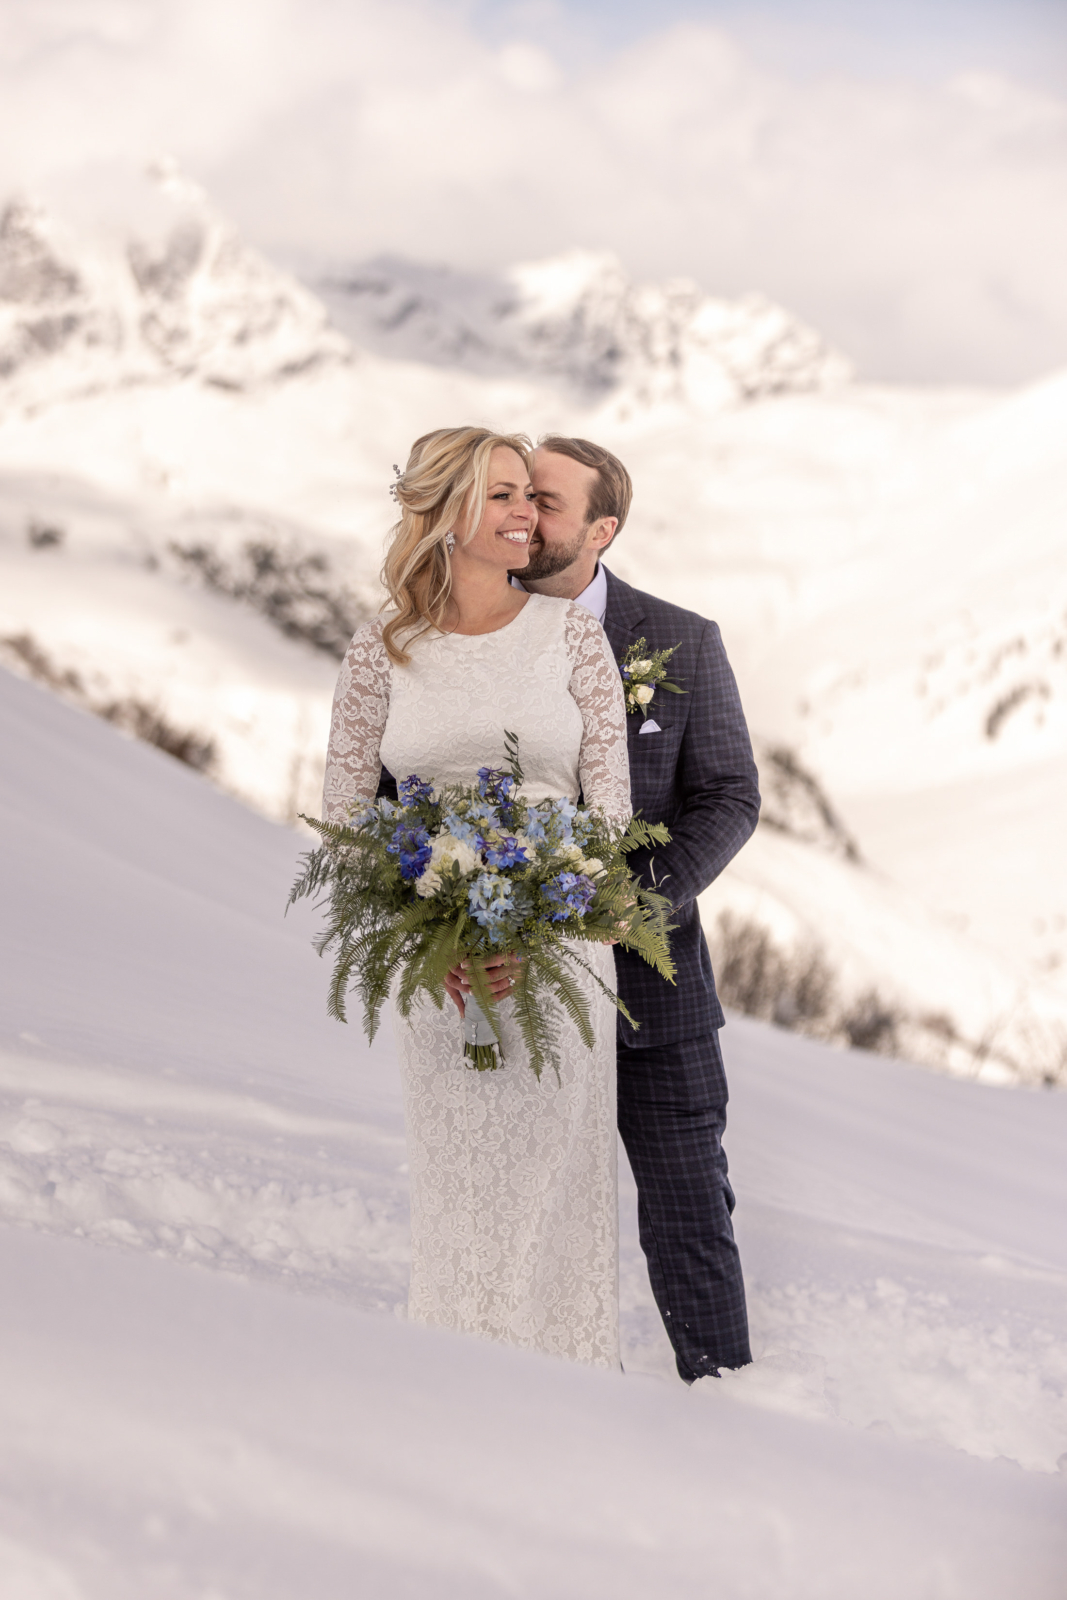 Wedding photos in the snow